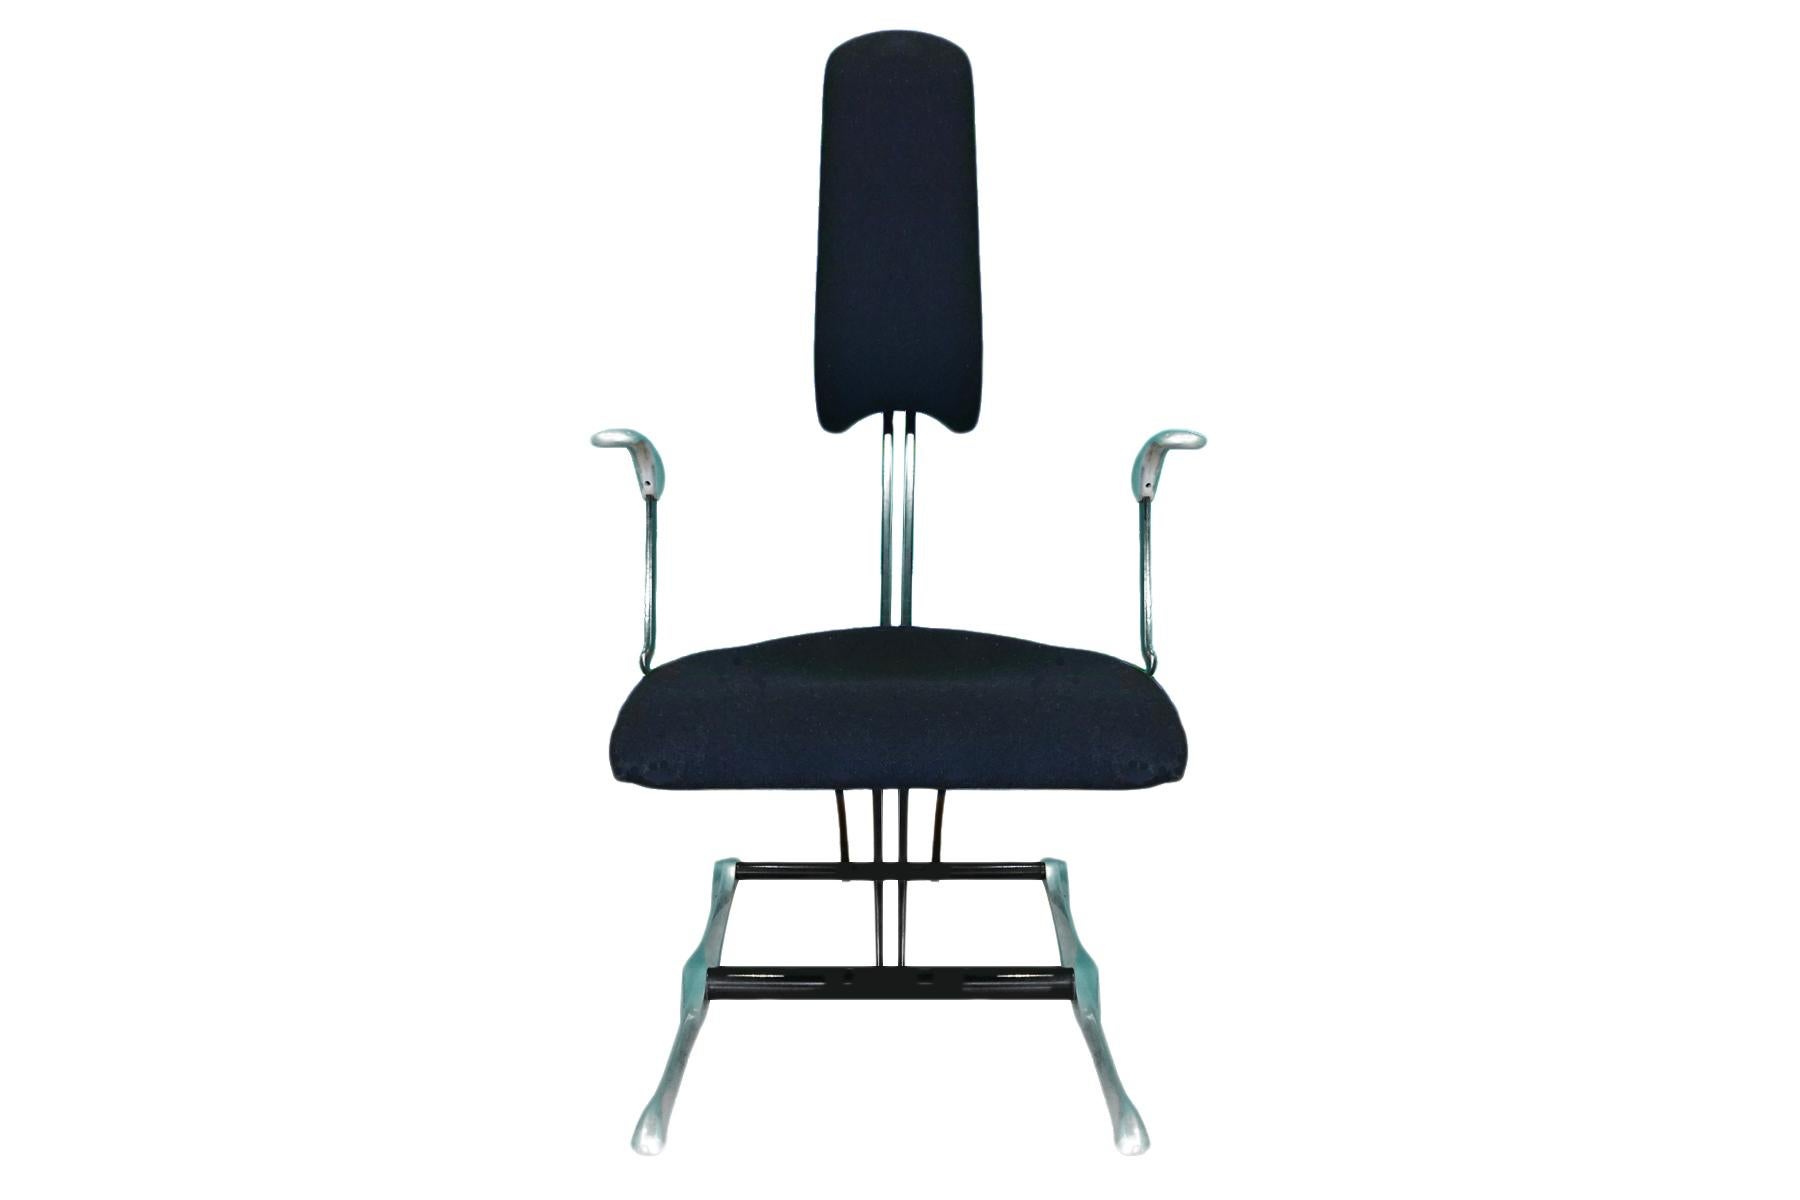 Vintage Hille Meridio posturepedic Stuhl in schwarzem Stoff und Aluminium entworfen von Michael Dye. 

Hille wurde 1906 von dem russischen Emigranten Salamon Hille gegründet und hat eine lange und bedeutende Geschichte im britischen Möbeldesign. Am